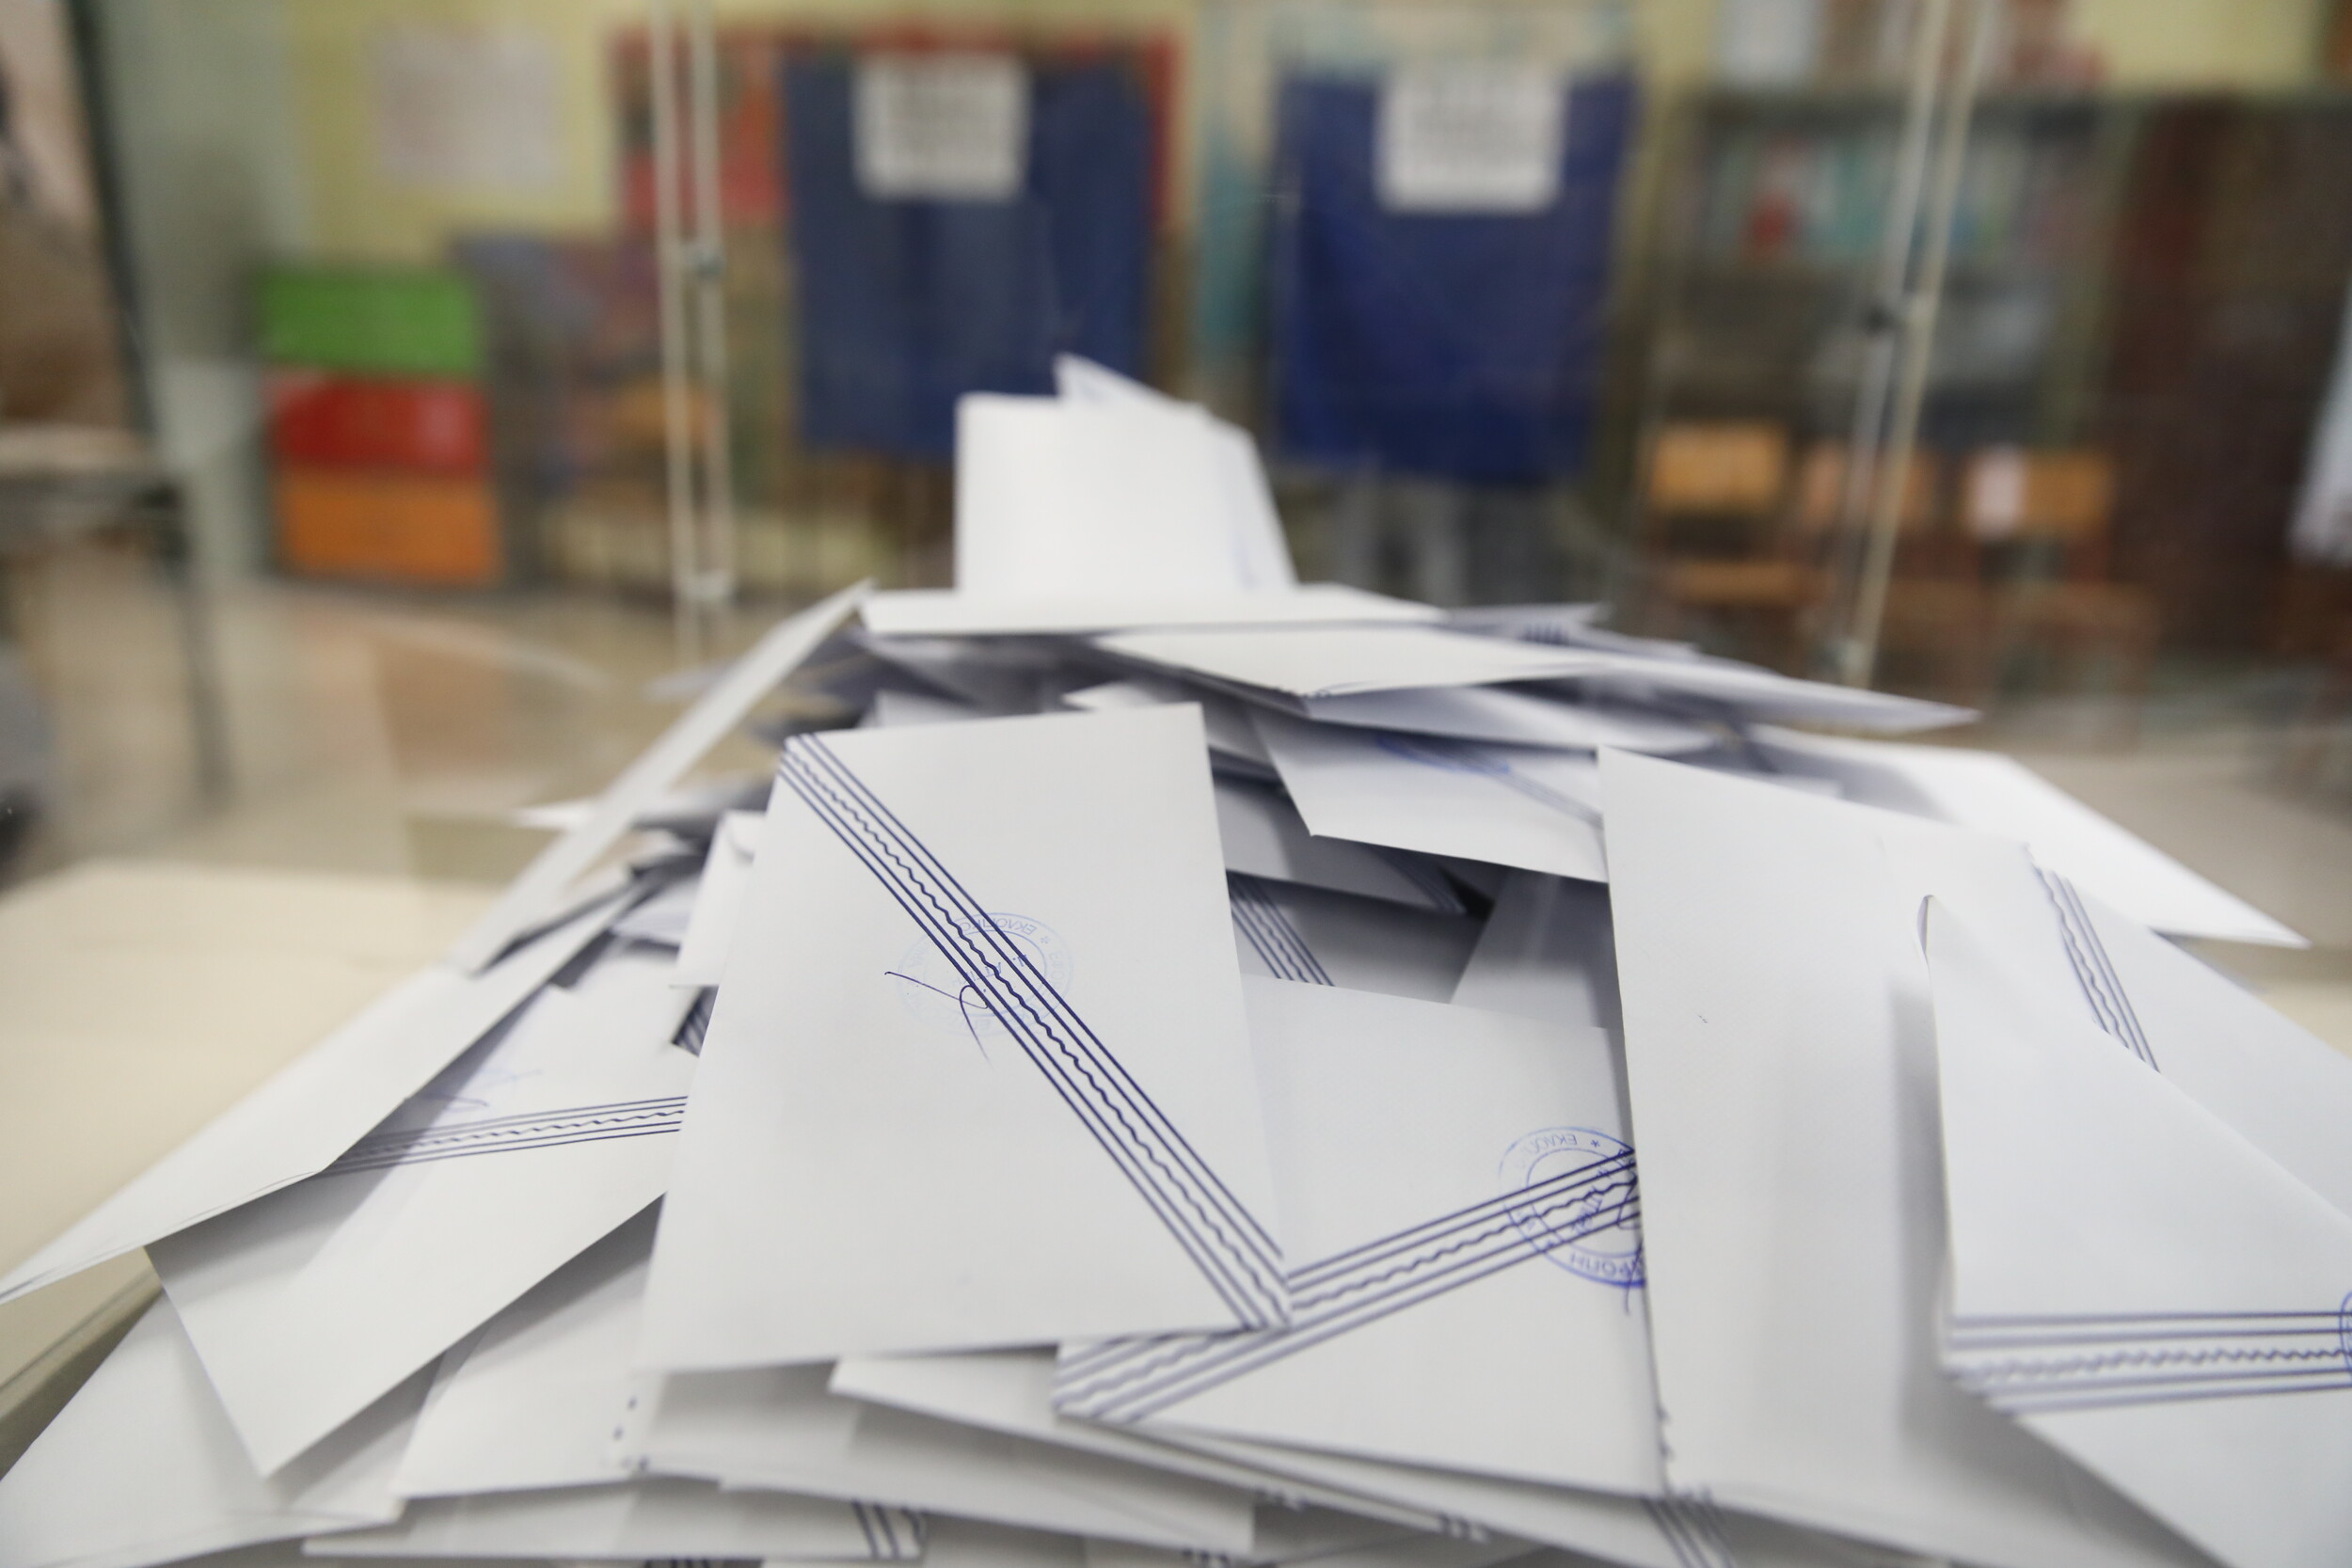 Αυτοδιοικητικές εκλογές: Tέλος χρόνου για κατάθεση συνδυασμών και υποψηφίων